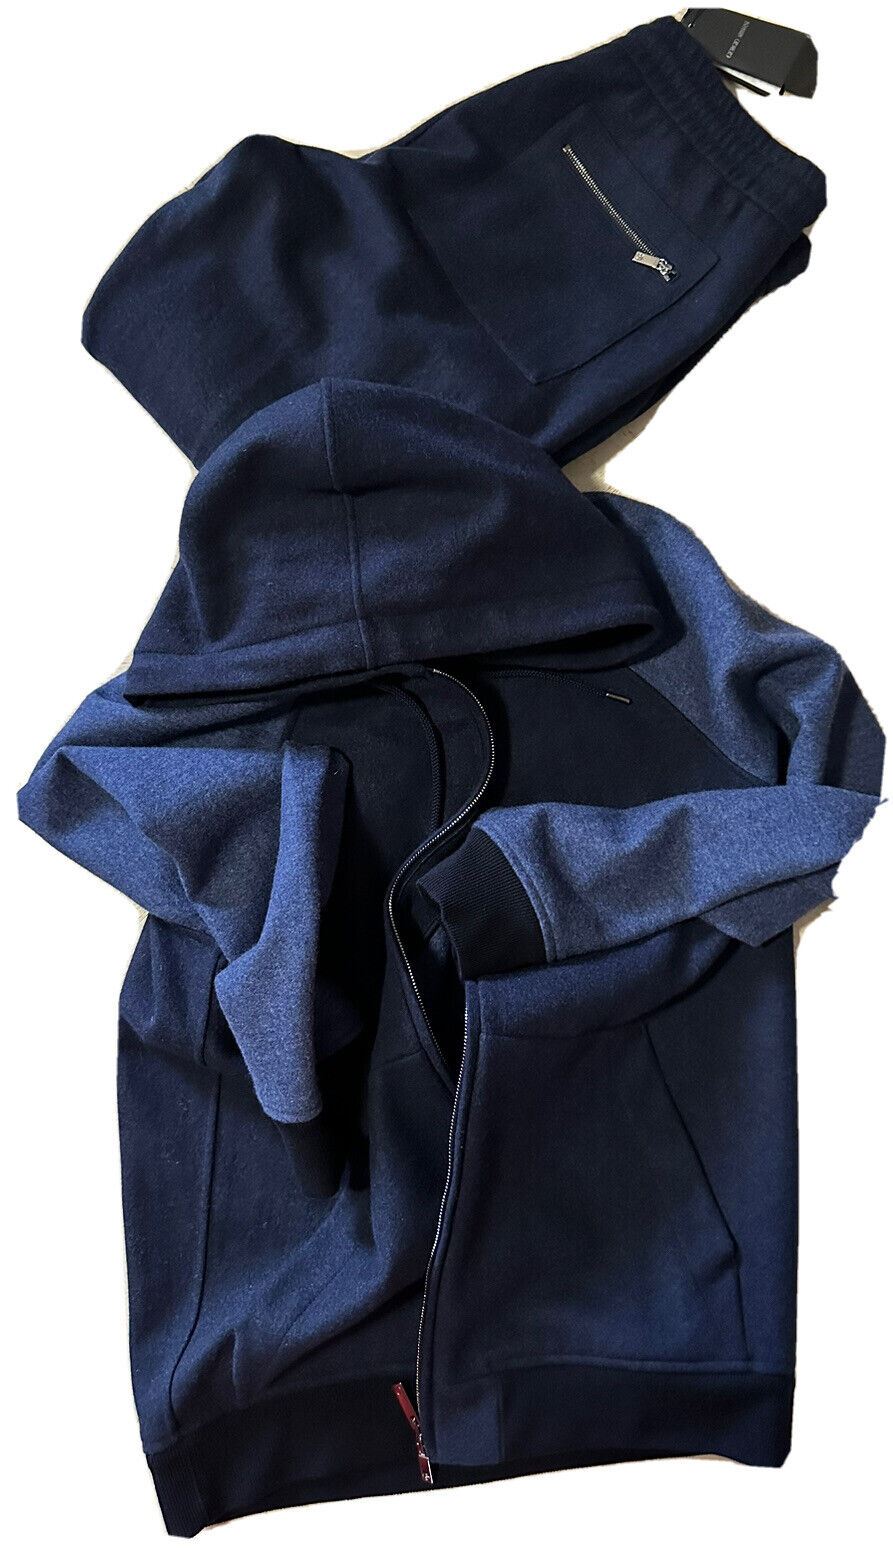 Новый мужской кашемировый спортивный костюм Giorgio Armani стоимостью $7690 темно-синий 38 US/48 EU Италия